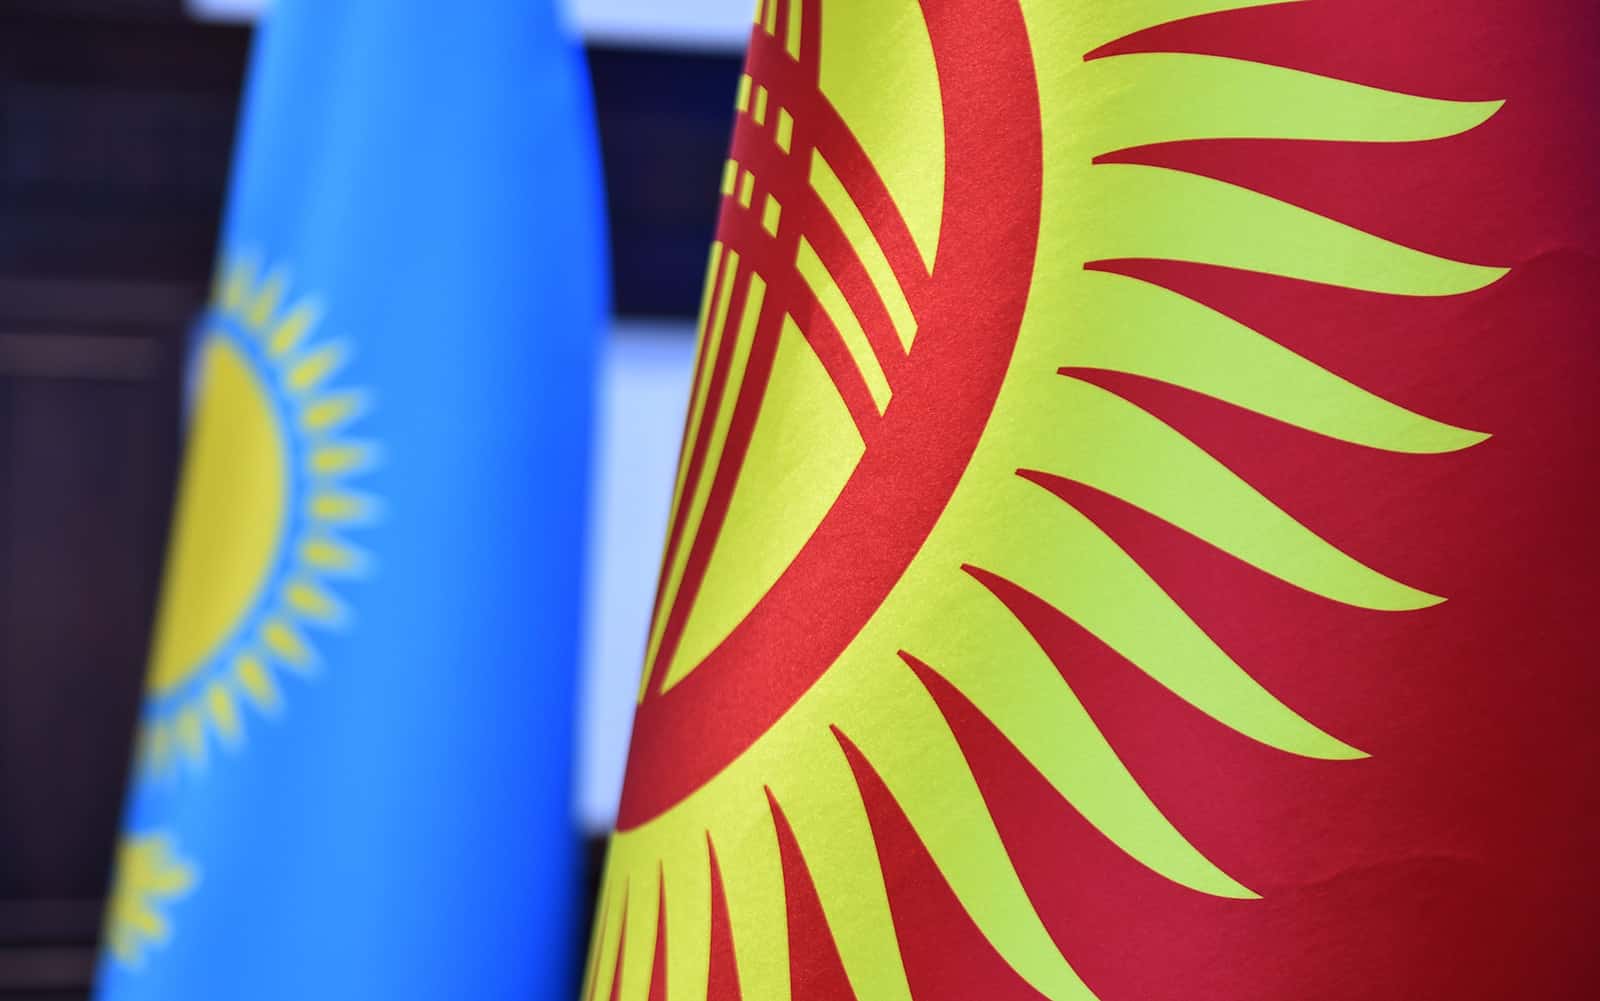 Контракты на $17.5 млн заключены в рамках торгово-экономической миссии Казахстана в Бишкеке